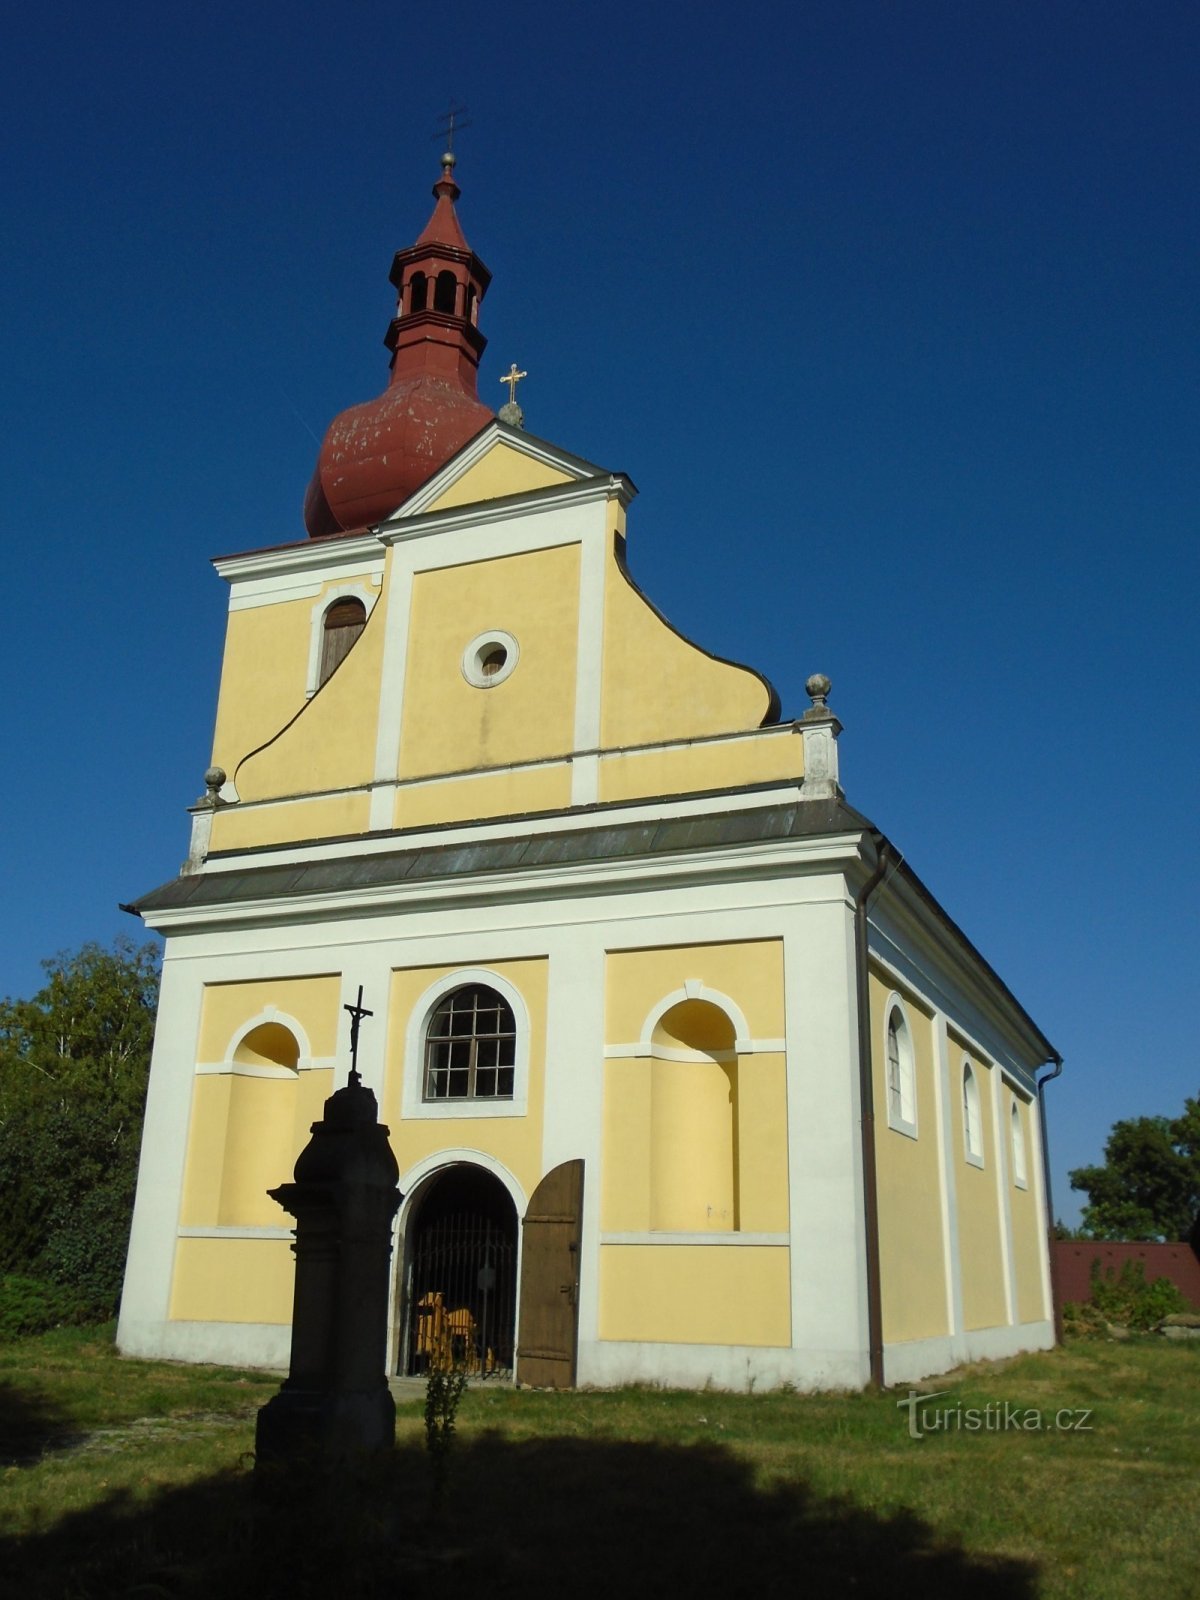 Église de St. Étienne, le premier martyr du Seigneur (Velký Třebešov)